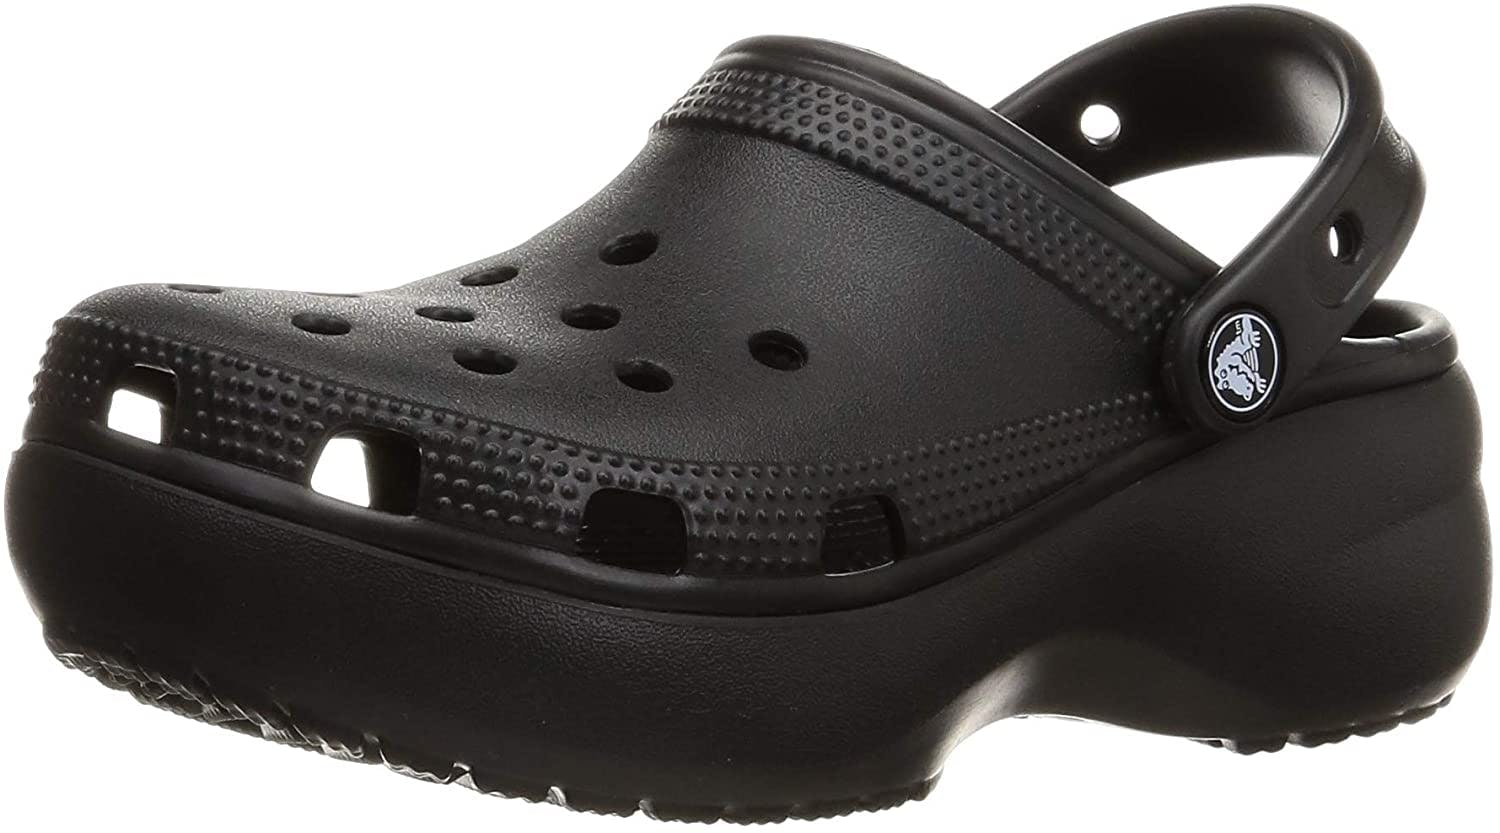 A Crocs Platform Clog